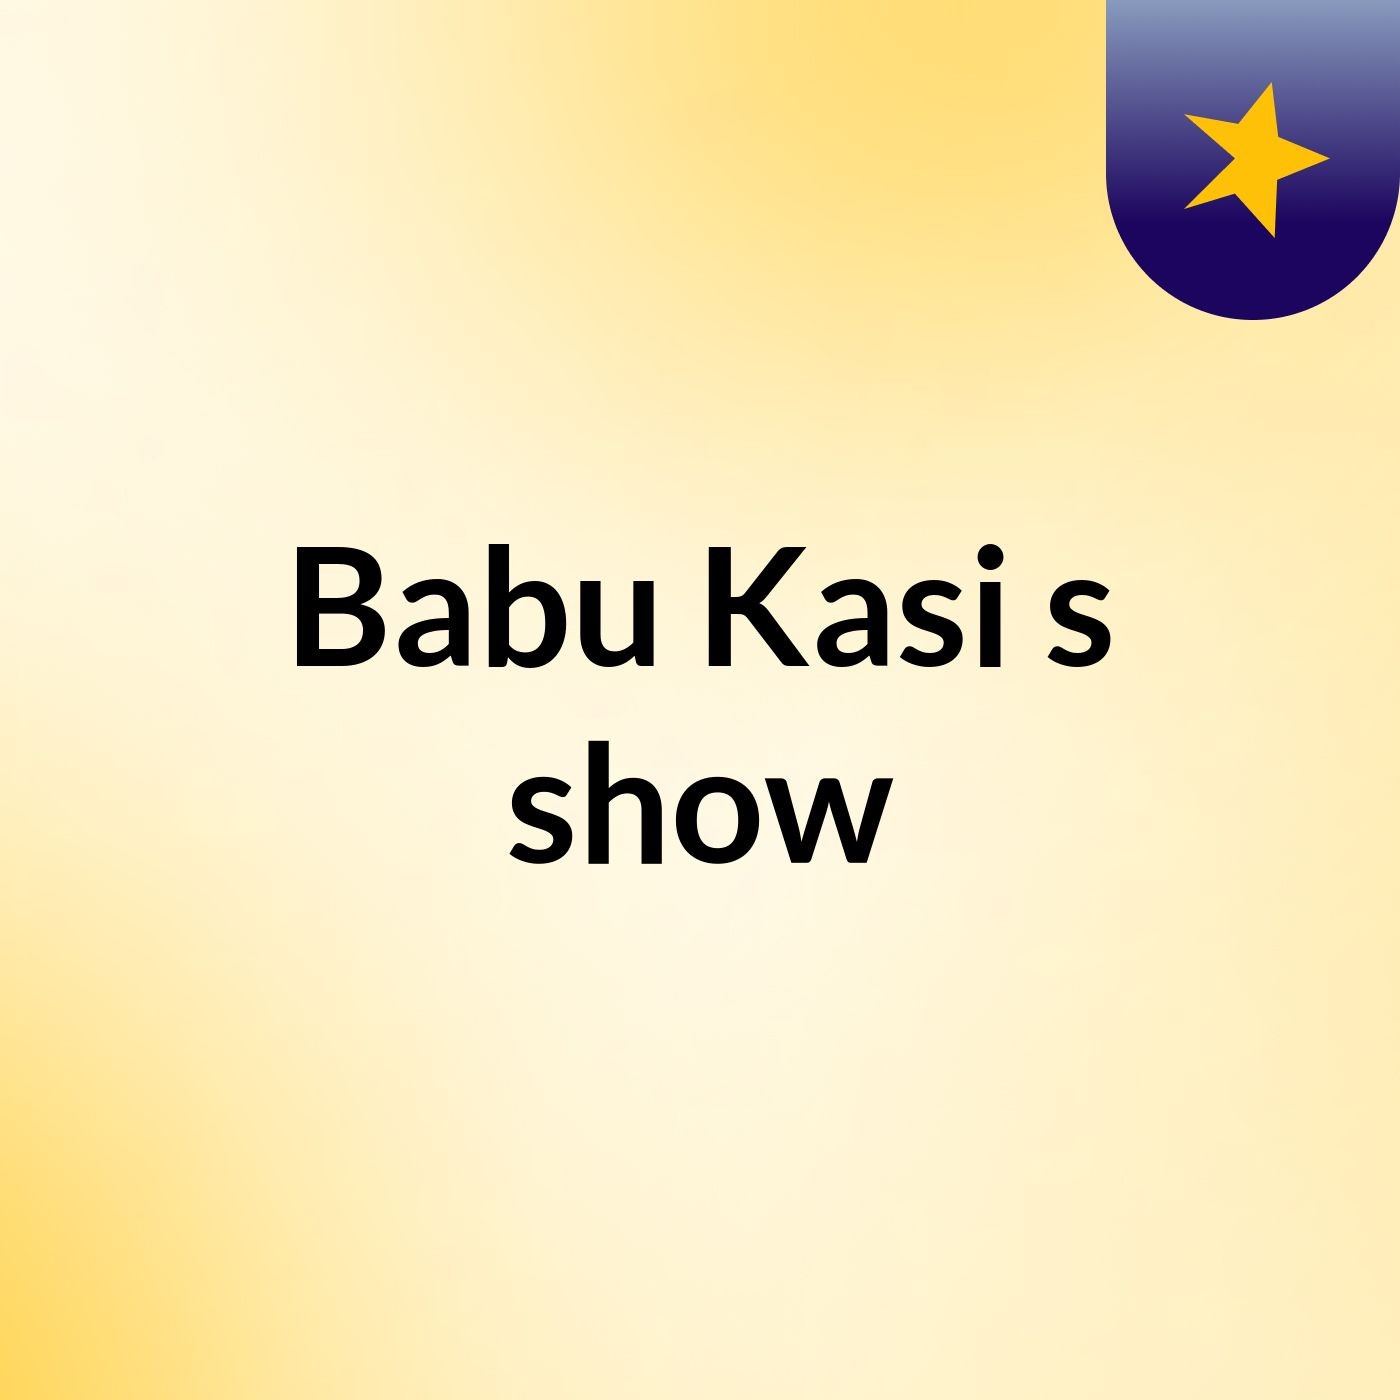 Babu Kasi's show